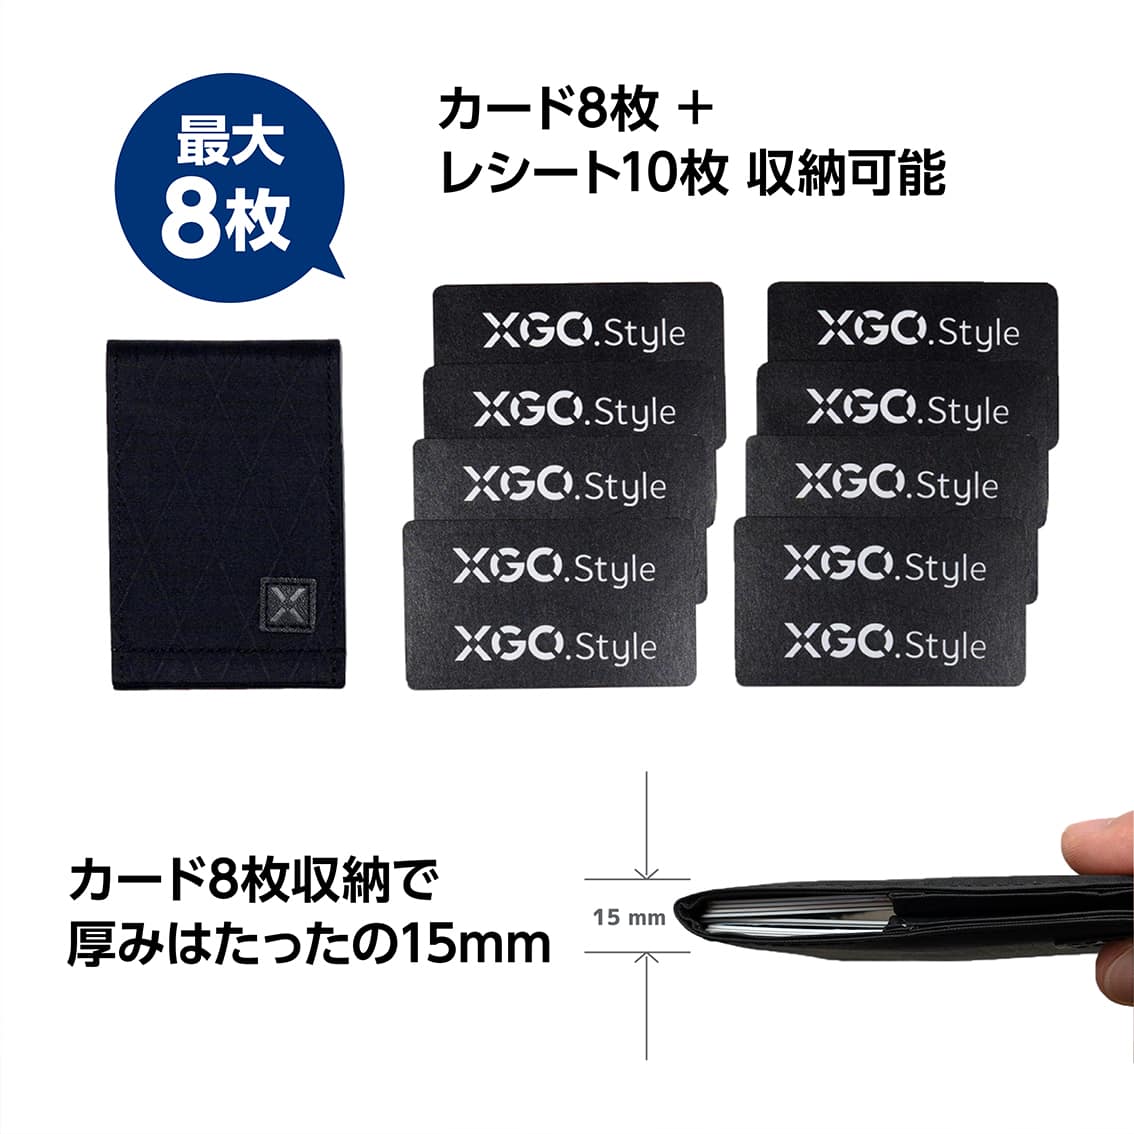 XGO.style カードケース MagSafe 対応 マグネット スリム おしゃれ 薄型 ミニ財布 メンズ レディース ビジネス